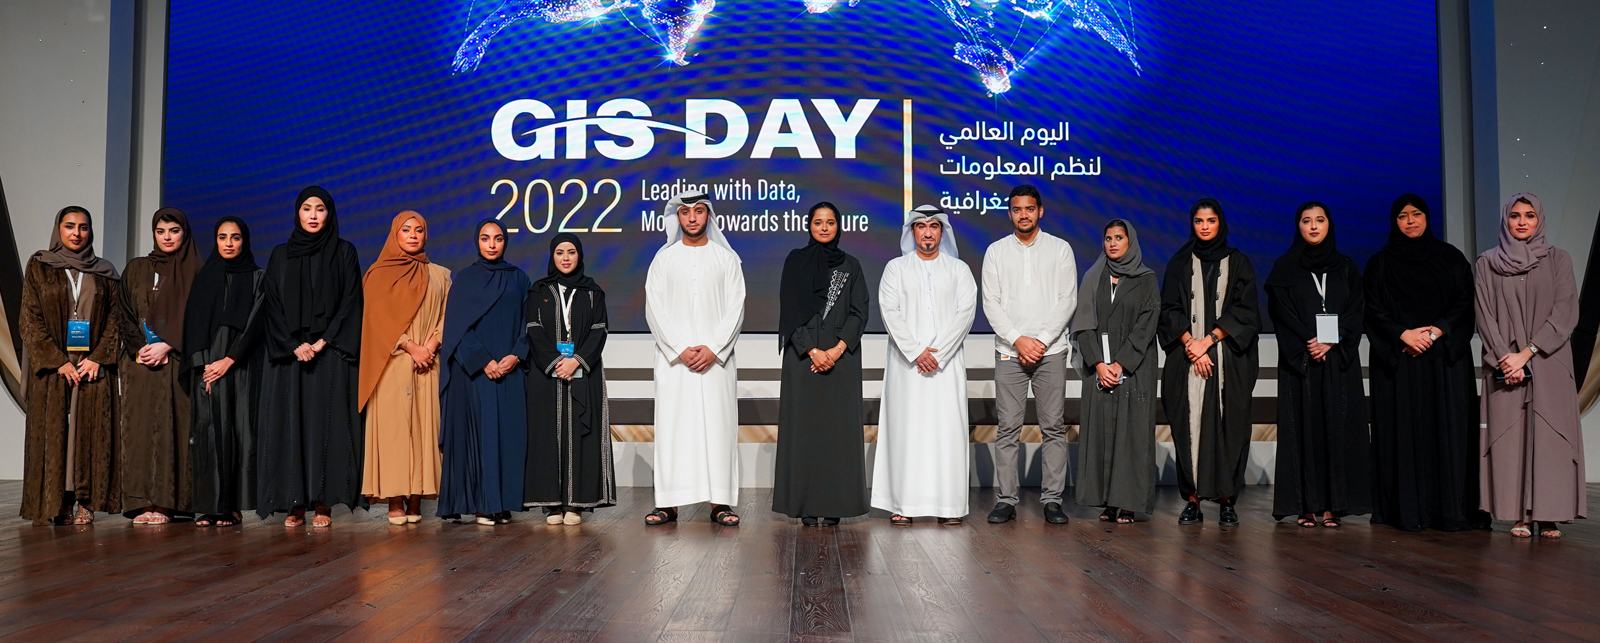 GIS Day 2022 November 2022